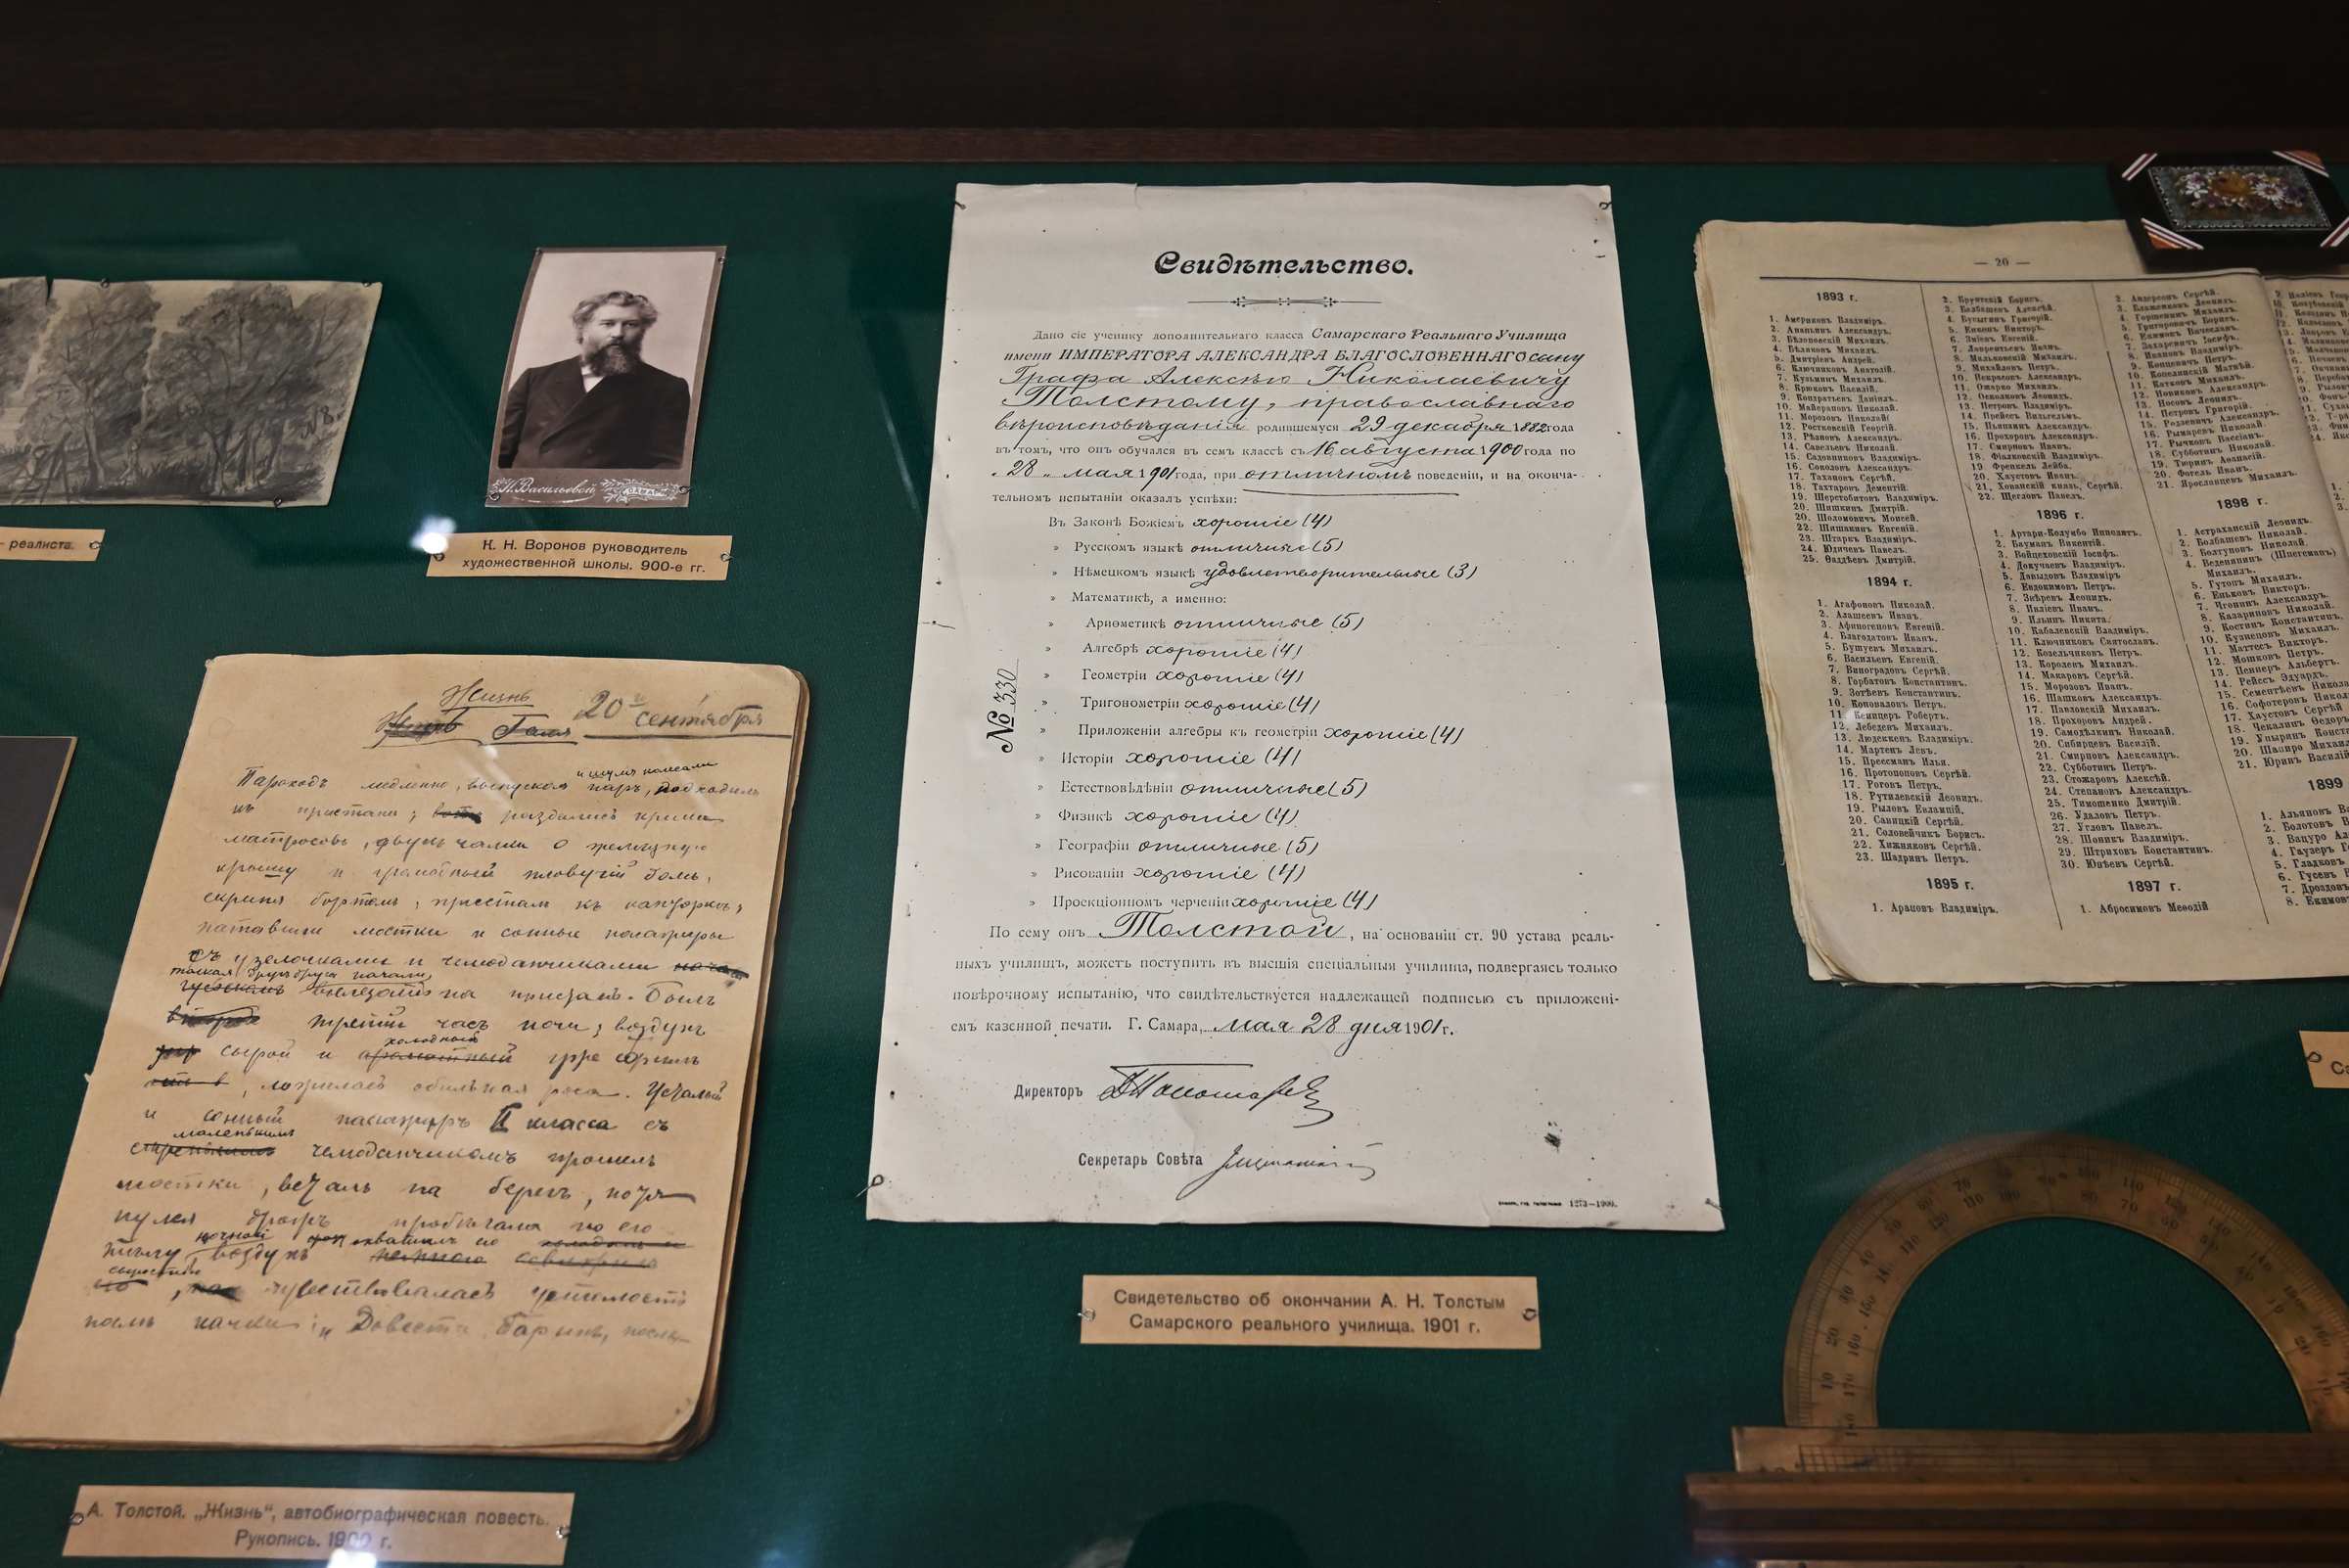 Экспозиция в музее Алексея Толстого в Самаре. Свидетельство об окончании Алексеем Толстым Самарского реального училища в 1901 году.